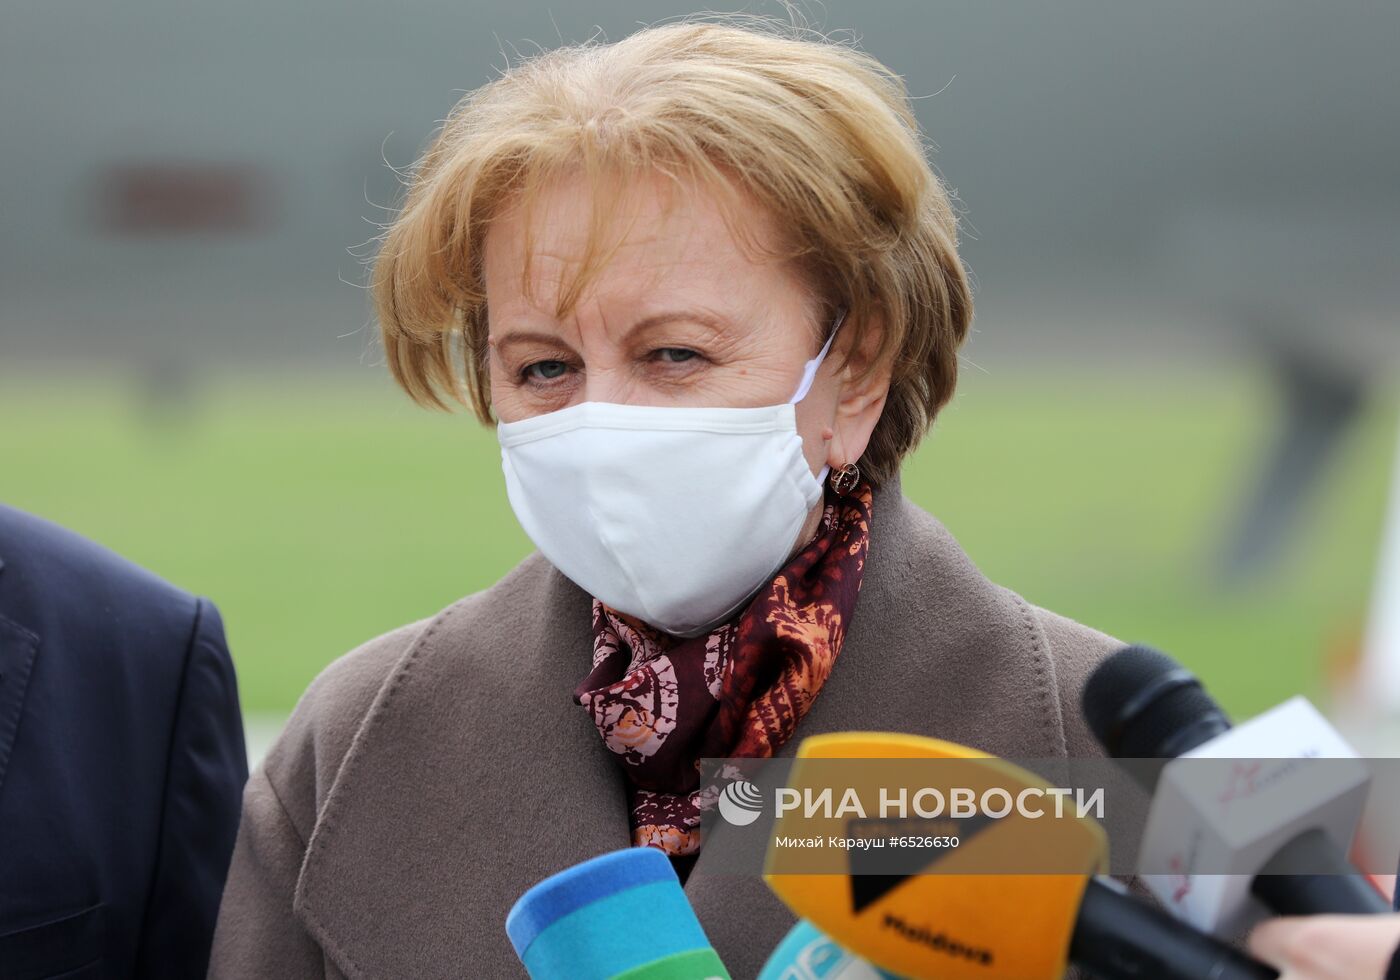 Партия вакцины Sputnik V прибыла в Молдавию